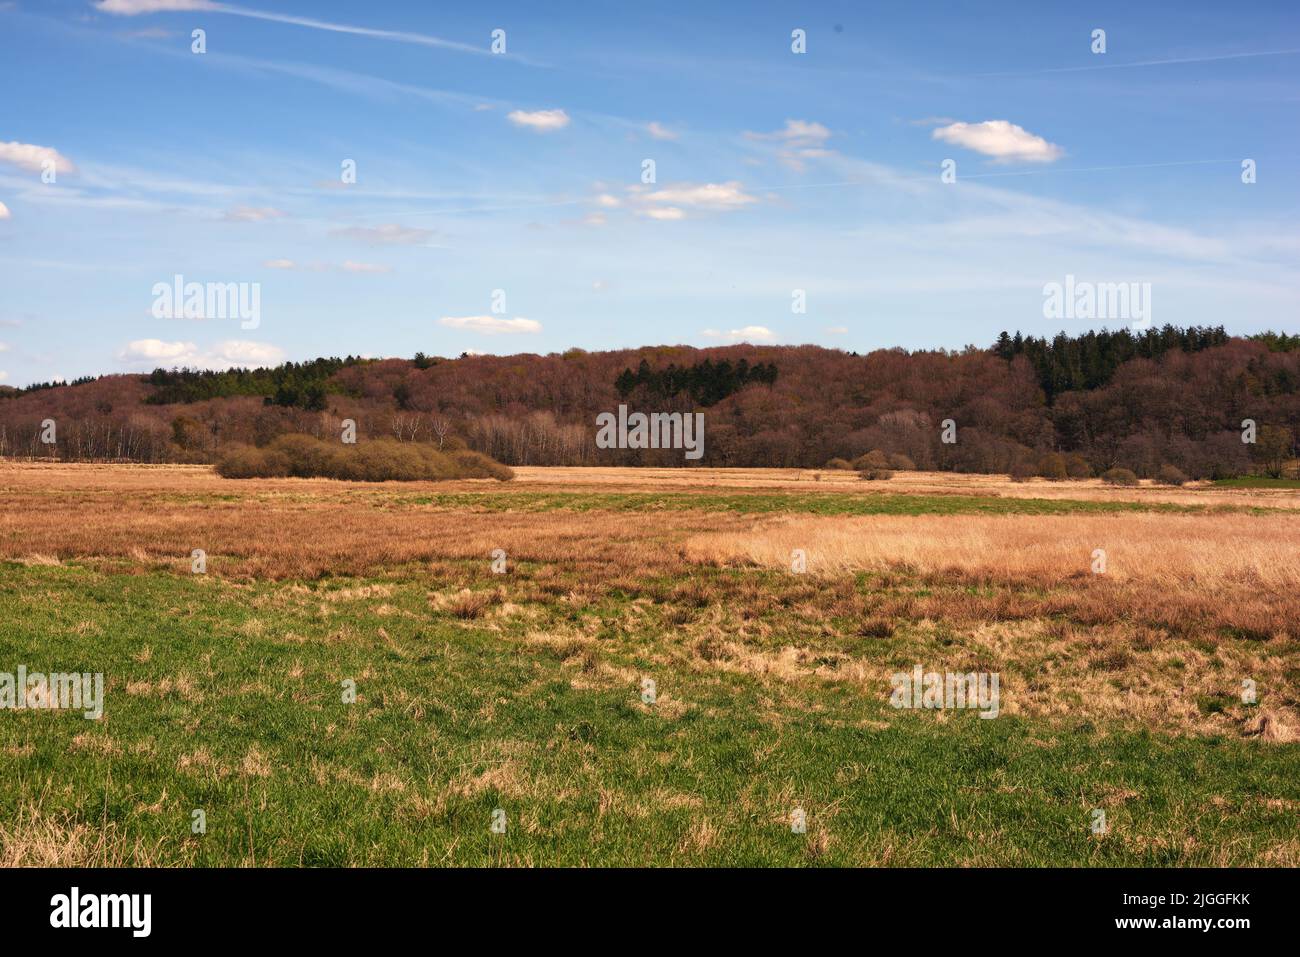 Vista panoramica del paesaggio rurale nel Regno di Danimarca contro il cielo blu copyspace e aria fresca. Tranquilla armonia nella natura con cespugli e alberi Foto Stock